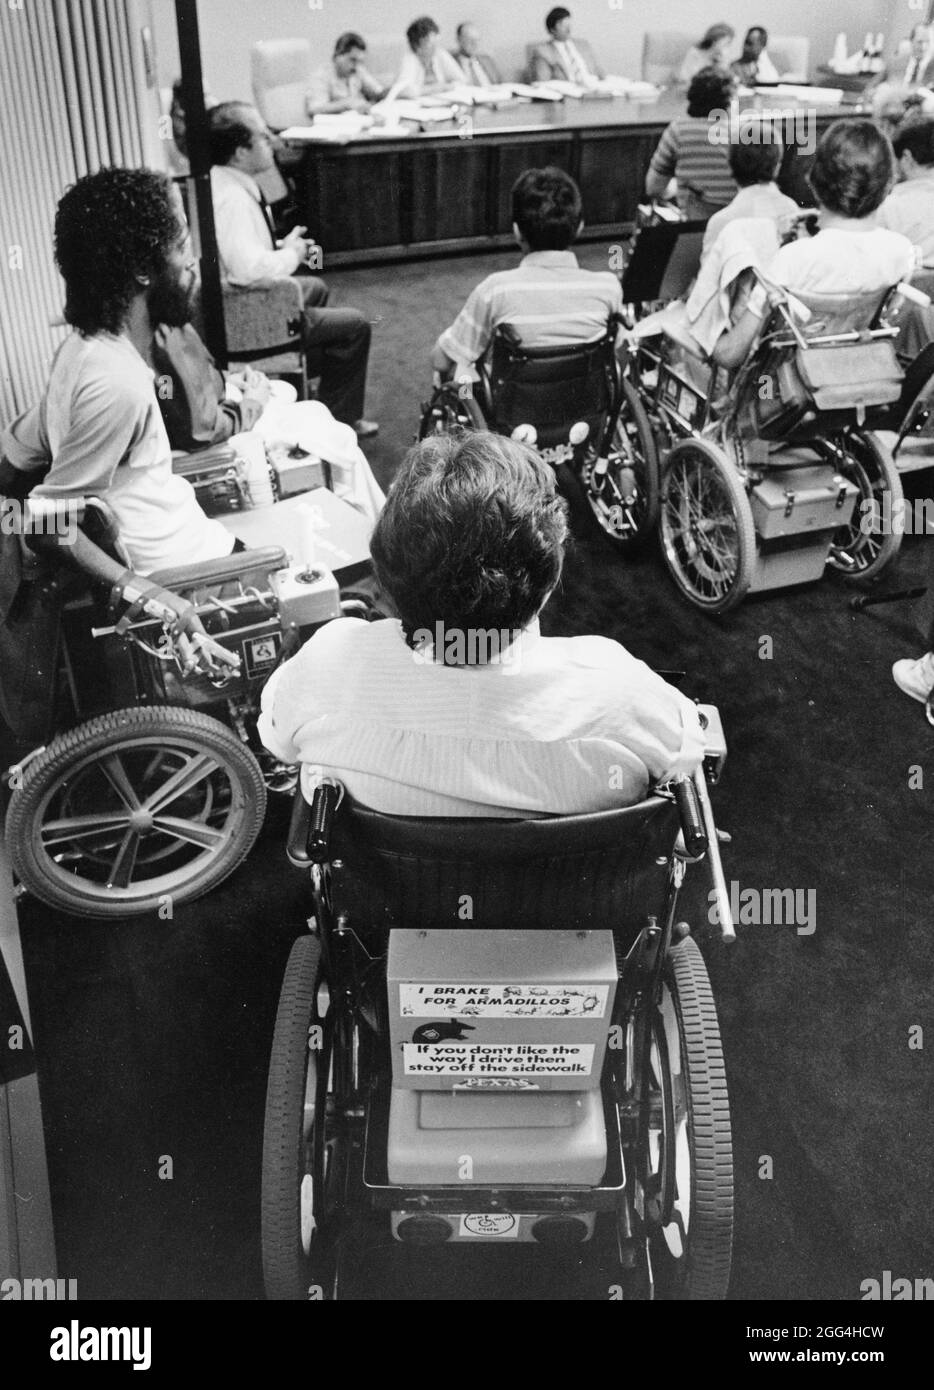 1987: Les membres de la communauté handicapée viennent en force à la réunion du conseil des transports de la ville pour préconiser un service d'autobus plus accessible. Banque D'Images